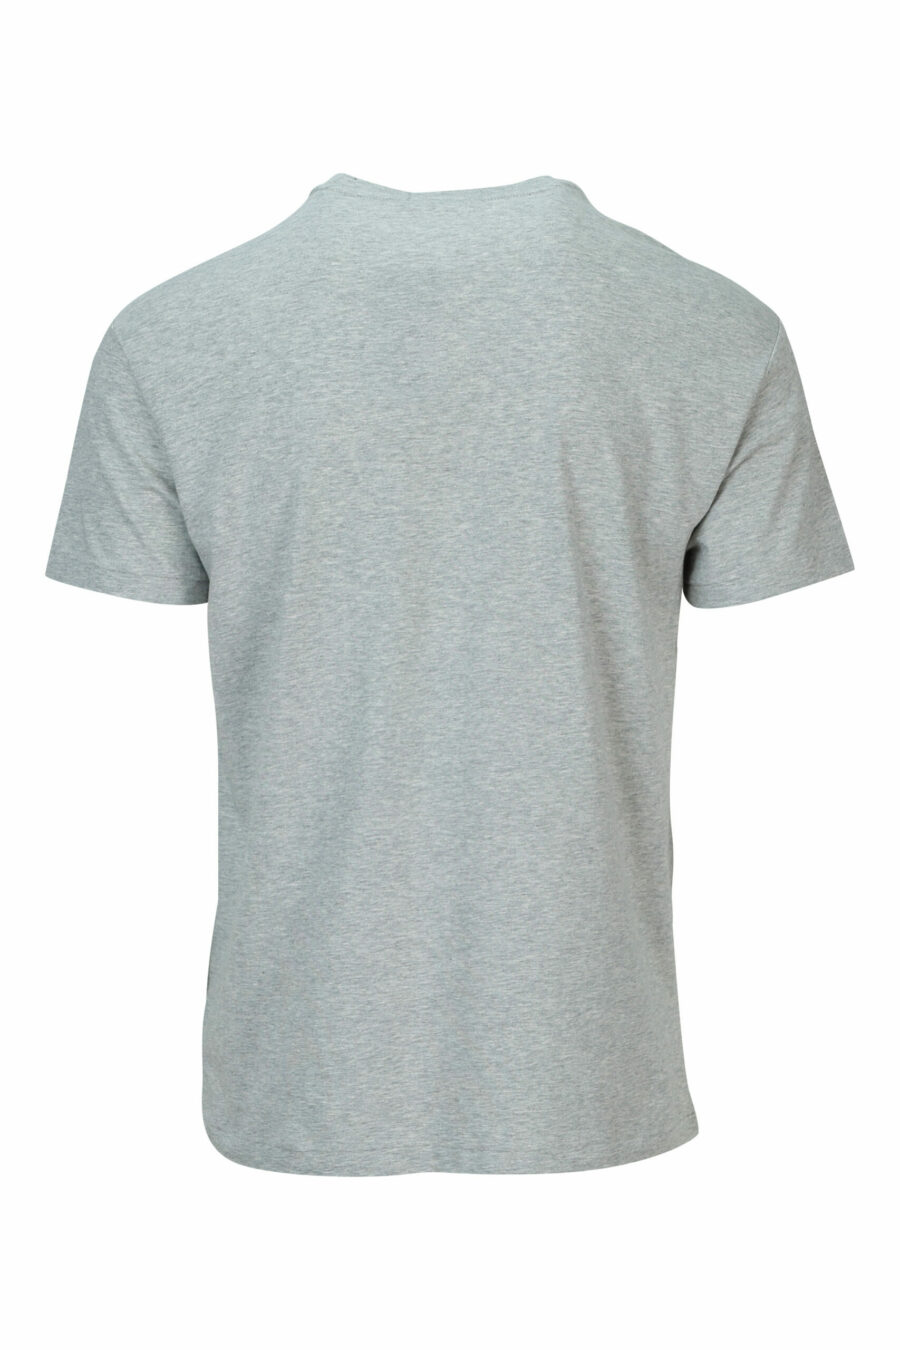 T-shirt gris avec maxilogo "polo bear" - 3616536211918 1 à l'échelle